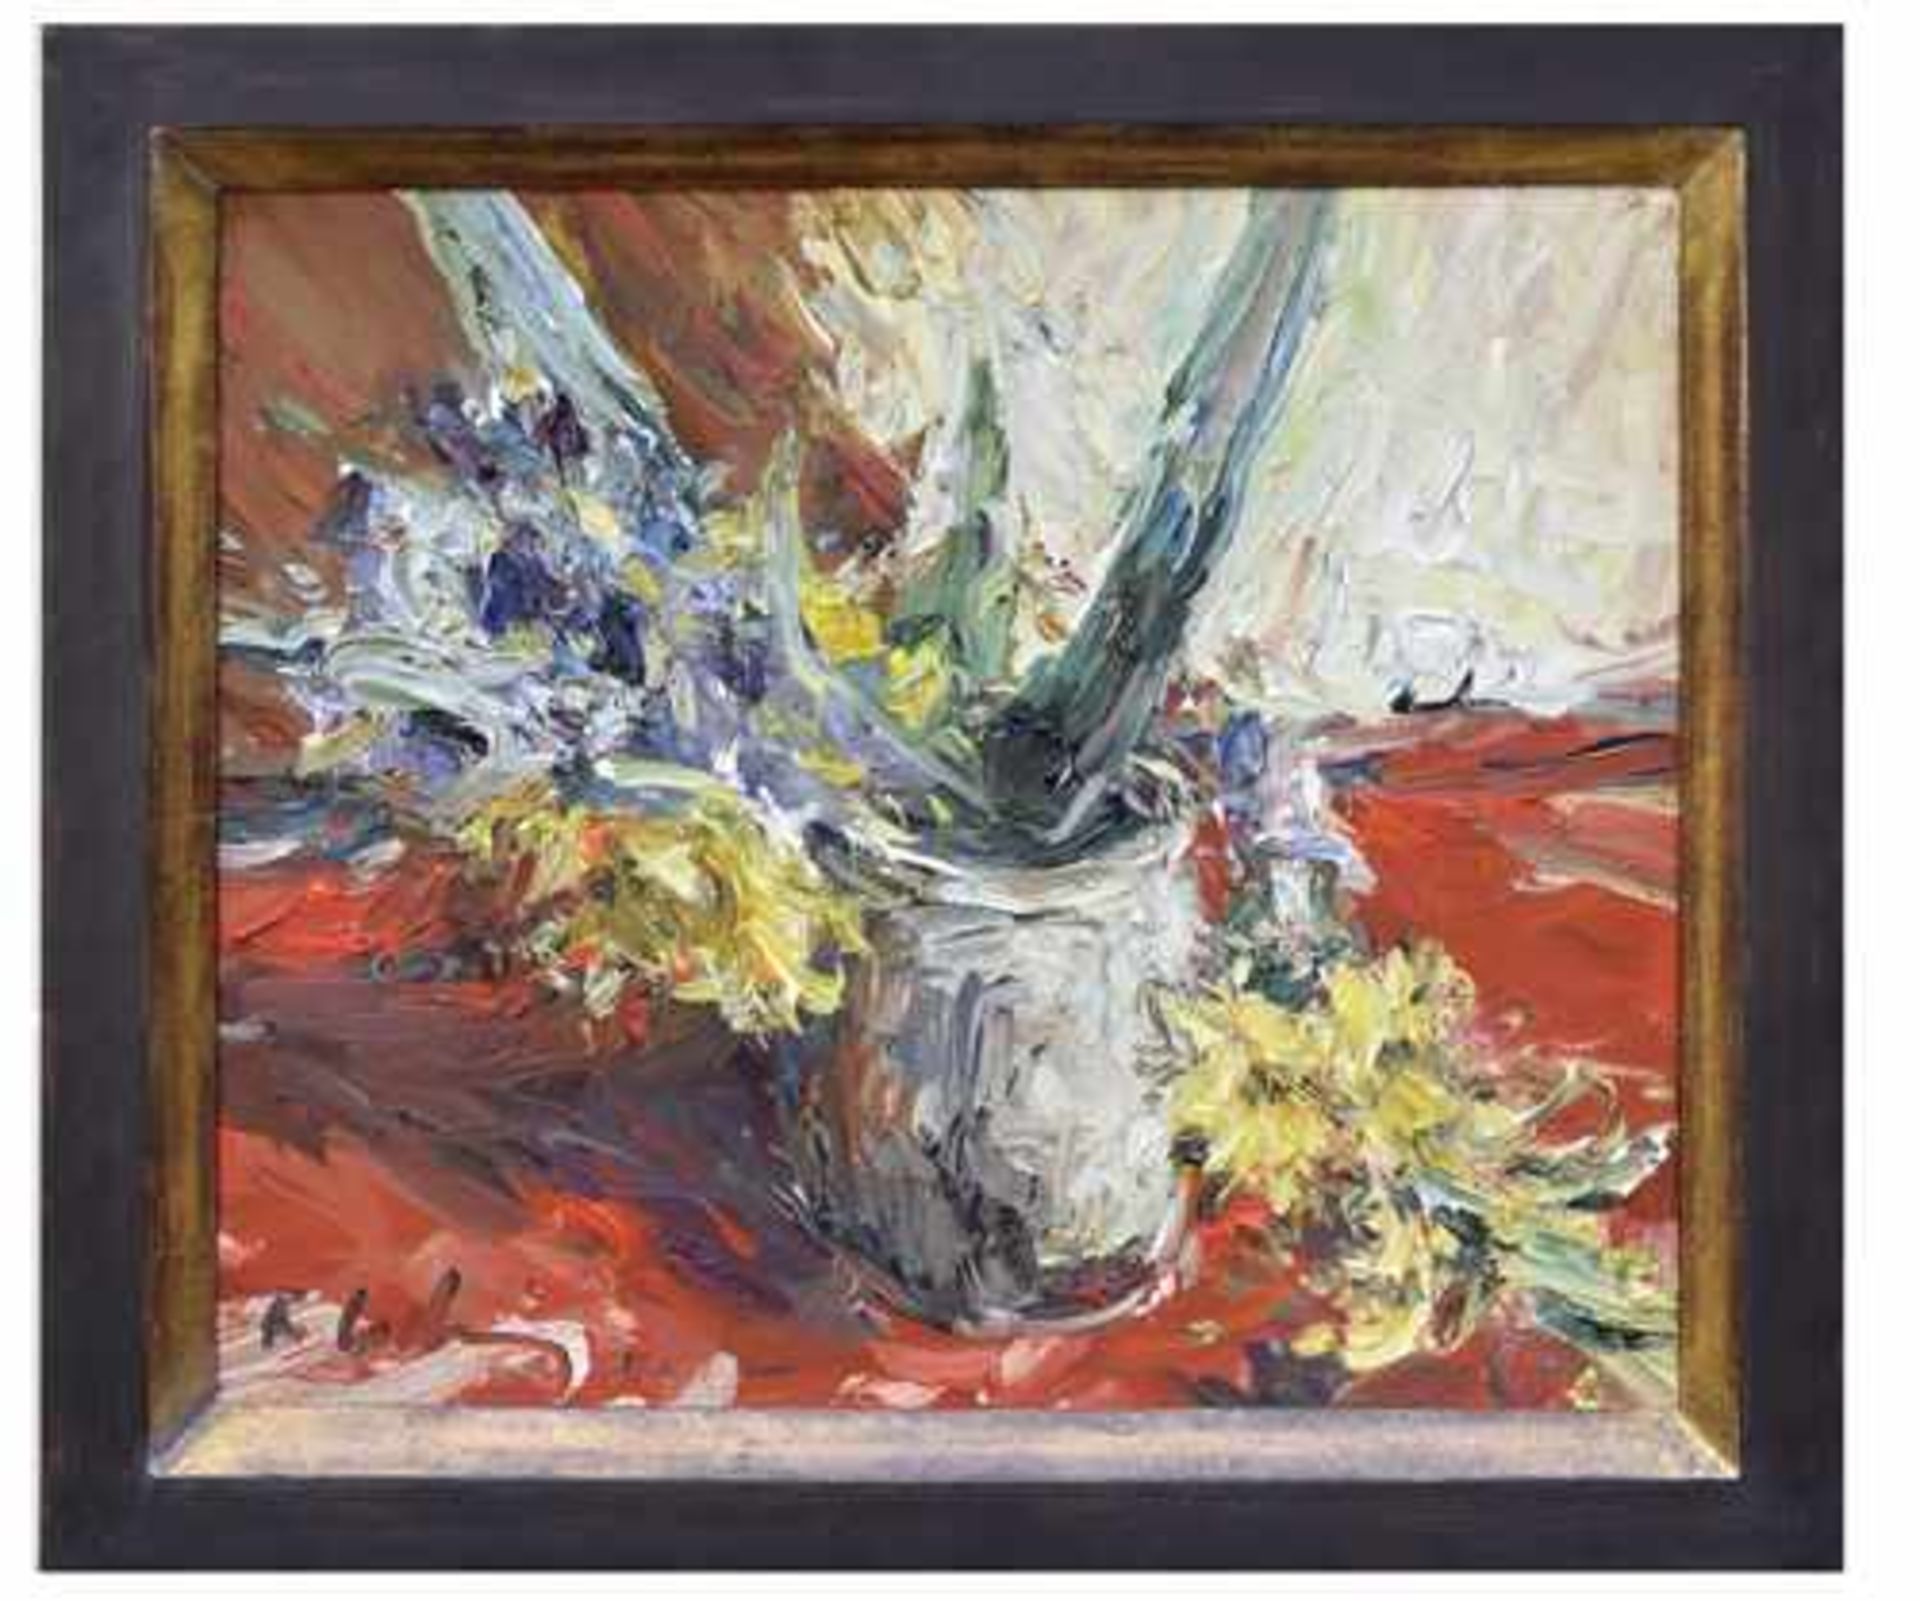 Roland LADWIG, 1935 Wedel – 2014 Berlin; Öl auf Leinwand "Blumen in Vase "; links unten sign. und - Bild 2 aus 2